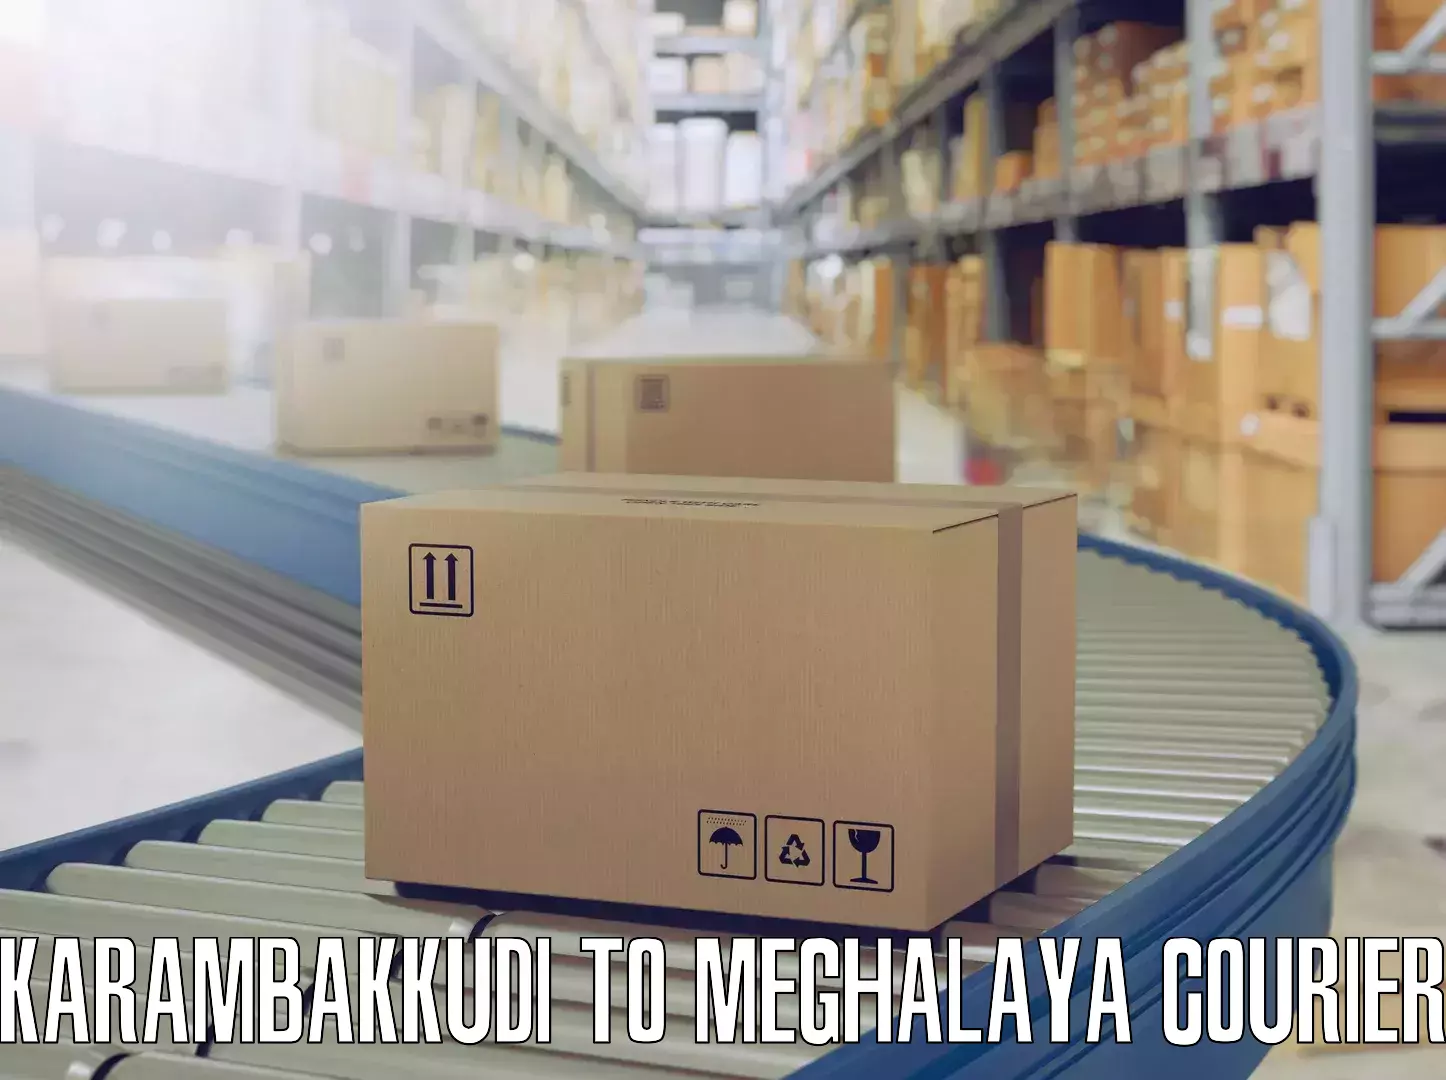 Furniture delivery service Karambakkudi to NIT Meghalaya